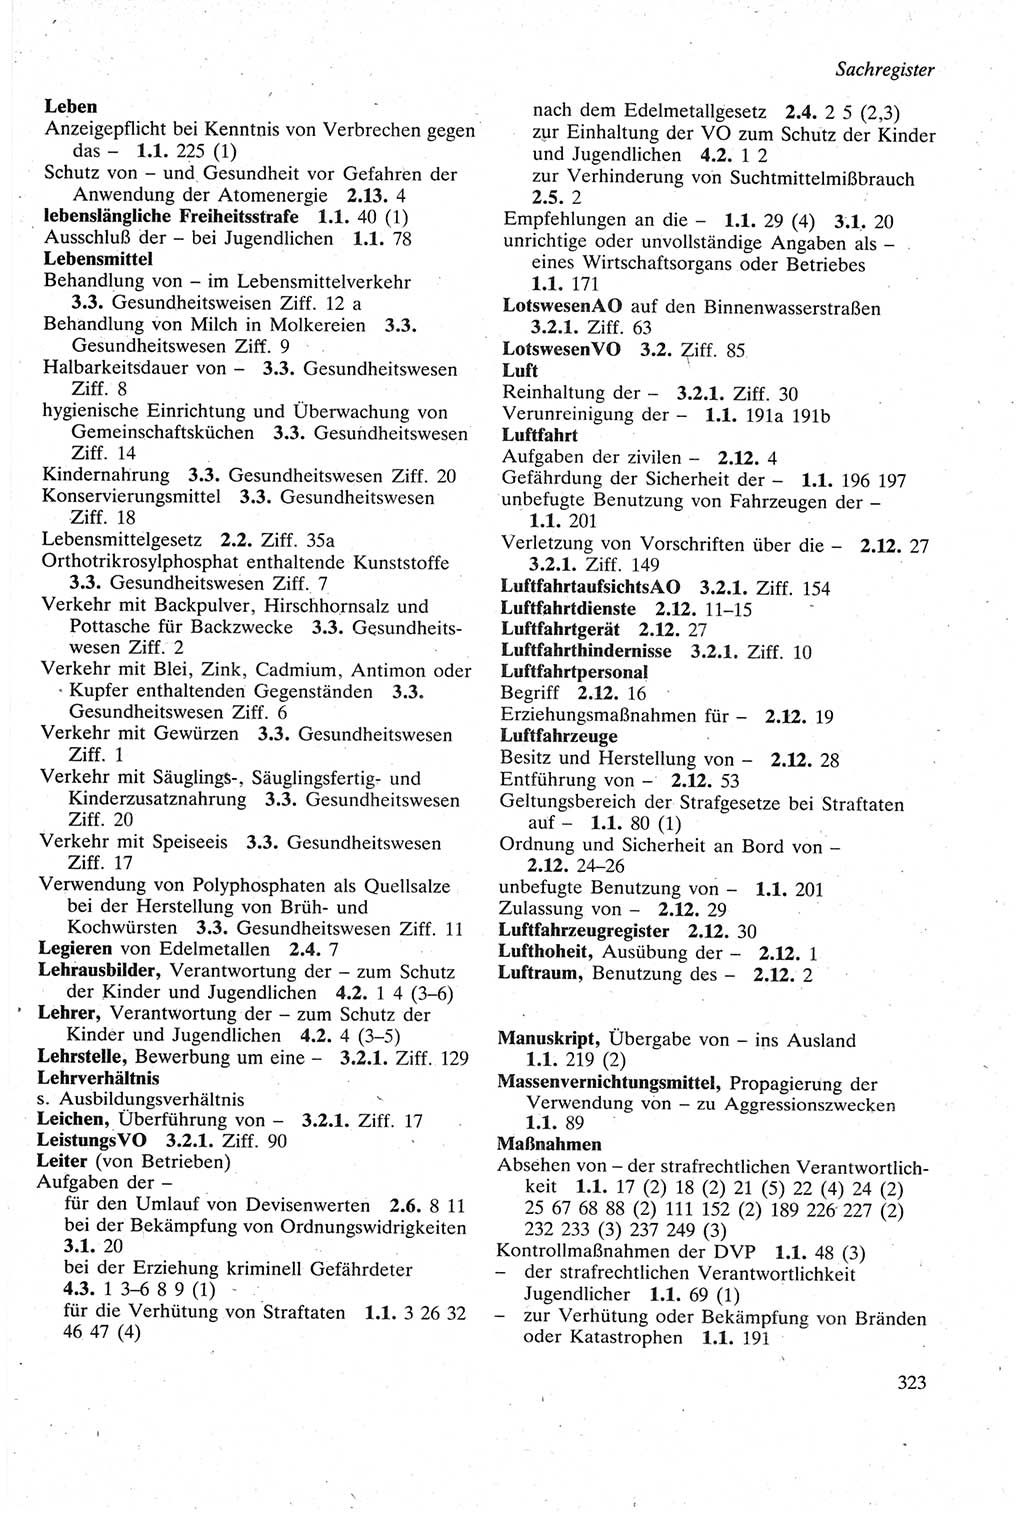 Strafgesetzbuch (StGB) der Deutschen Demokratischen Republik (DDR) sowie angrenzende Gesetze und Bestimmungen 1979, Seite 323 (StGB DDR Ges. Best. 1979, S. 323)